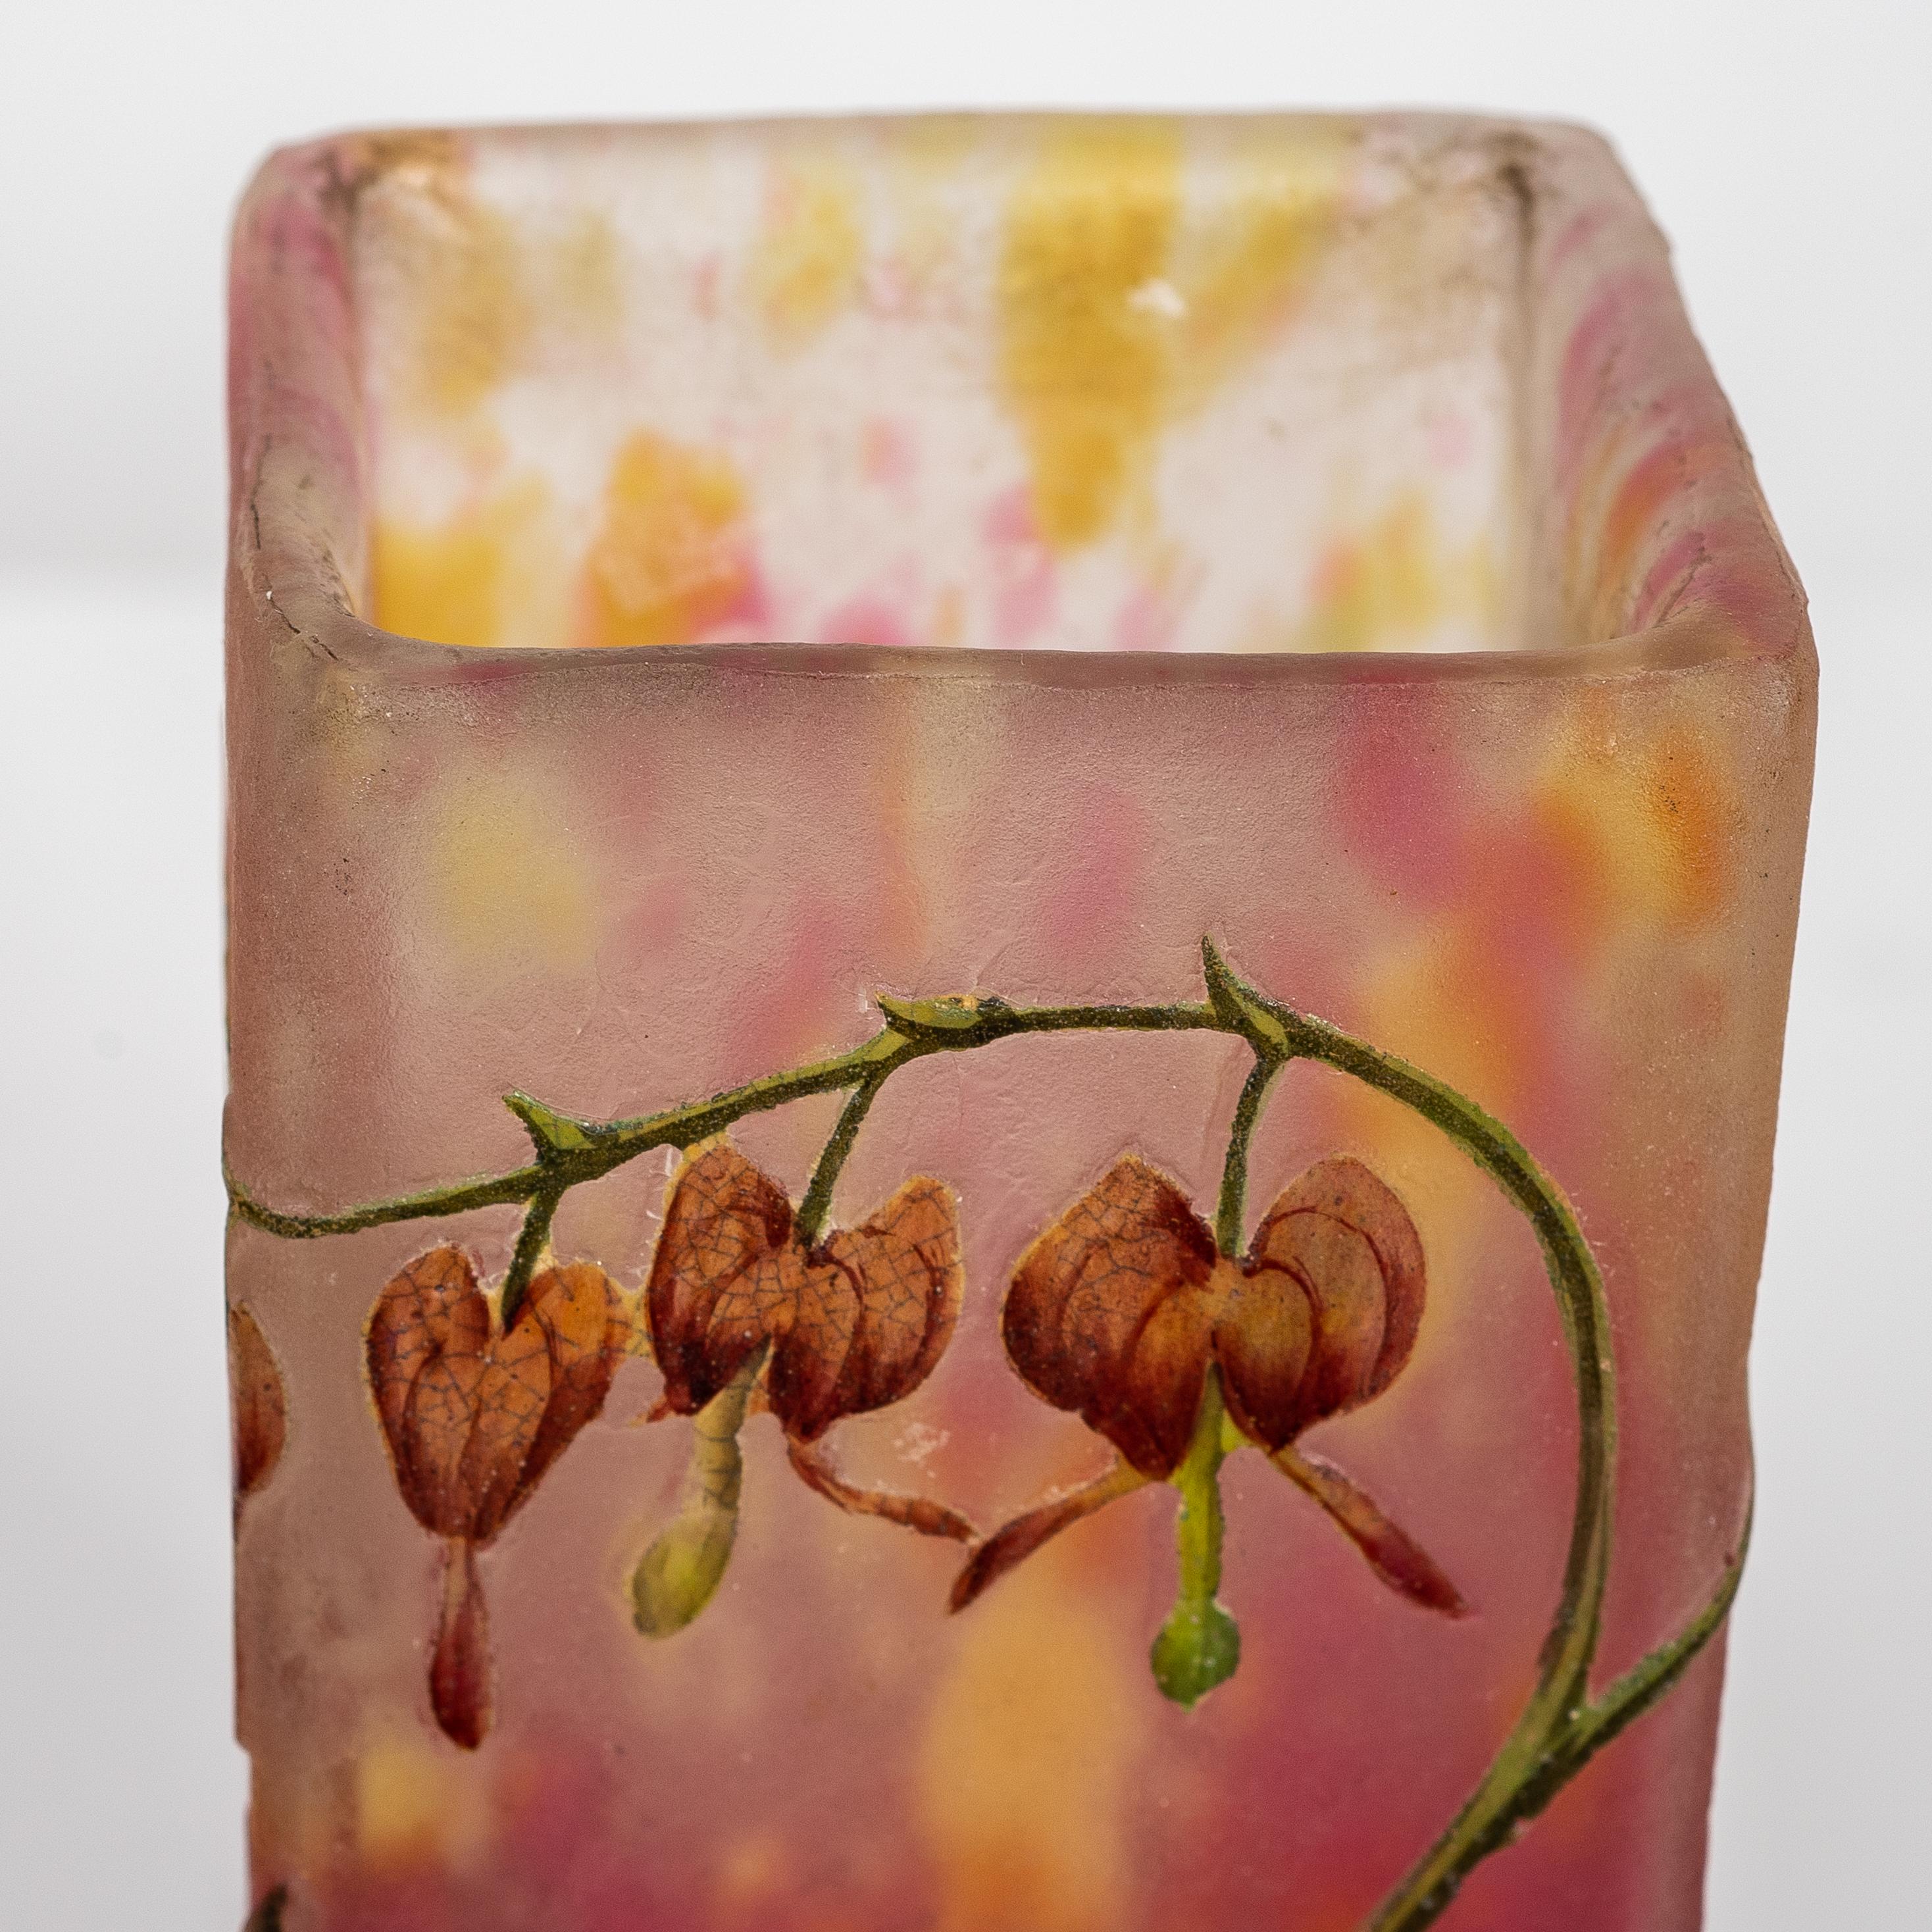  Glasvase mit Kamee und Emaille von Daum Nancy,
Frankreich, um 1910
Verziert mit rosa Wildblumen auf gesprenkeltem Grund
Kamee-Marke Daum Nancy mit Lothringer Kreuz
Abmessungen:
Breite 2 in. (5,1 cm.)
Höhe 4,64 in. (11,8 cm).
  